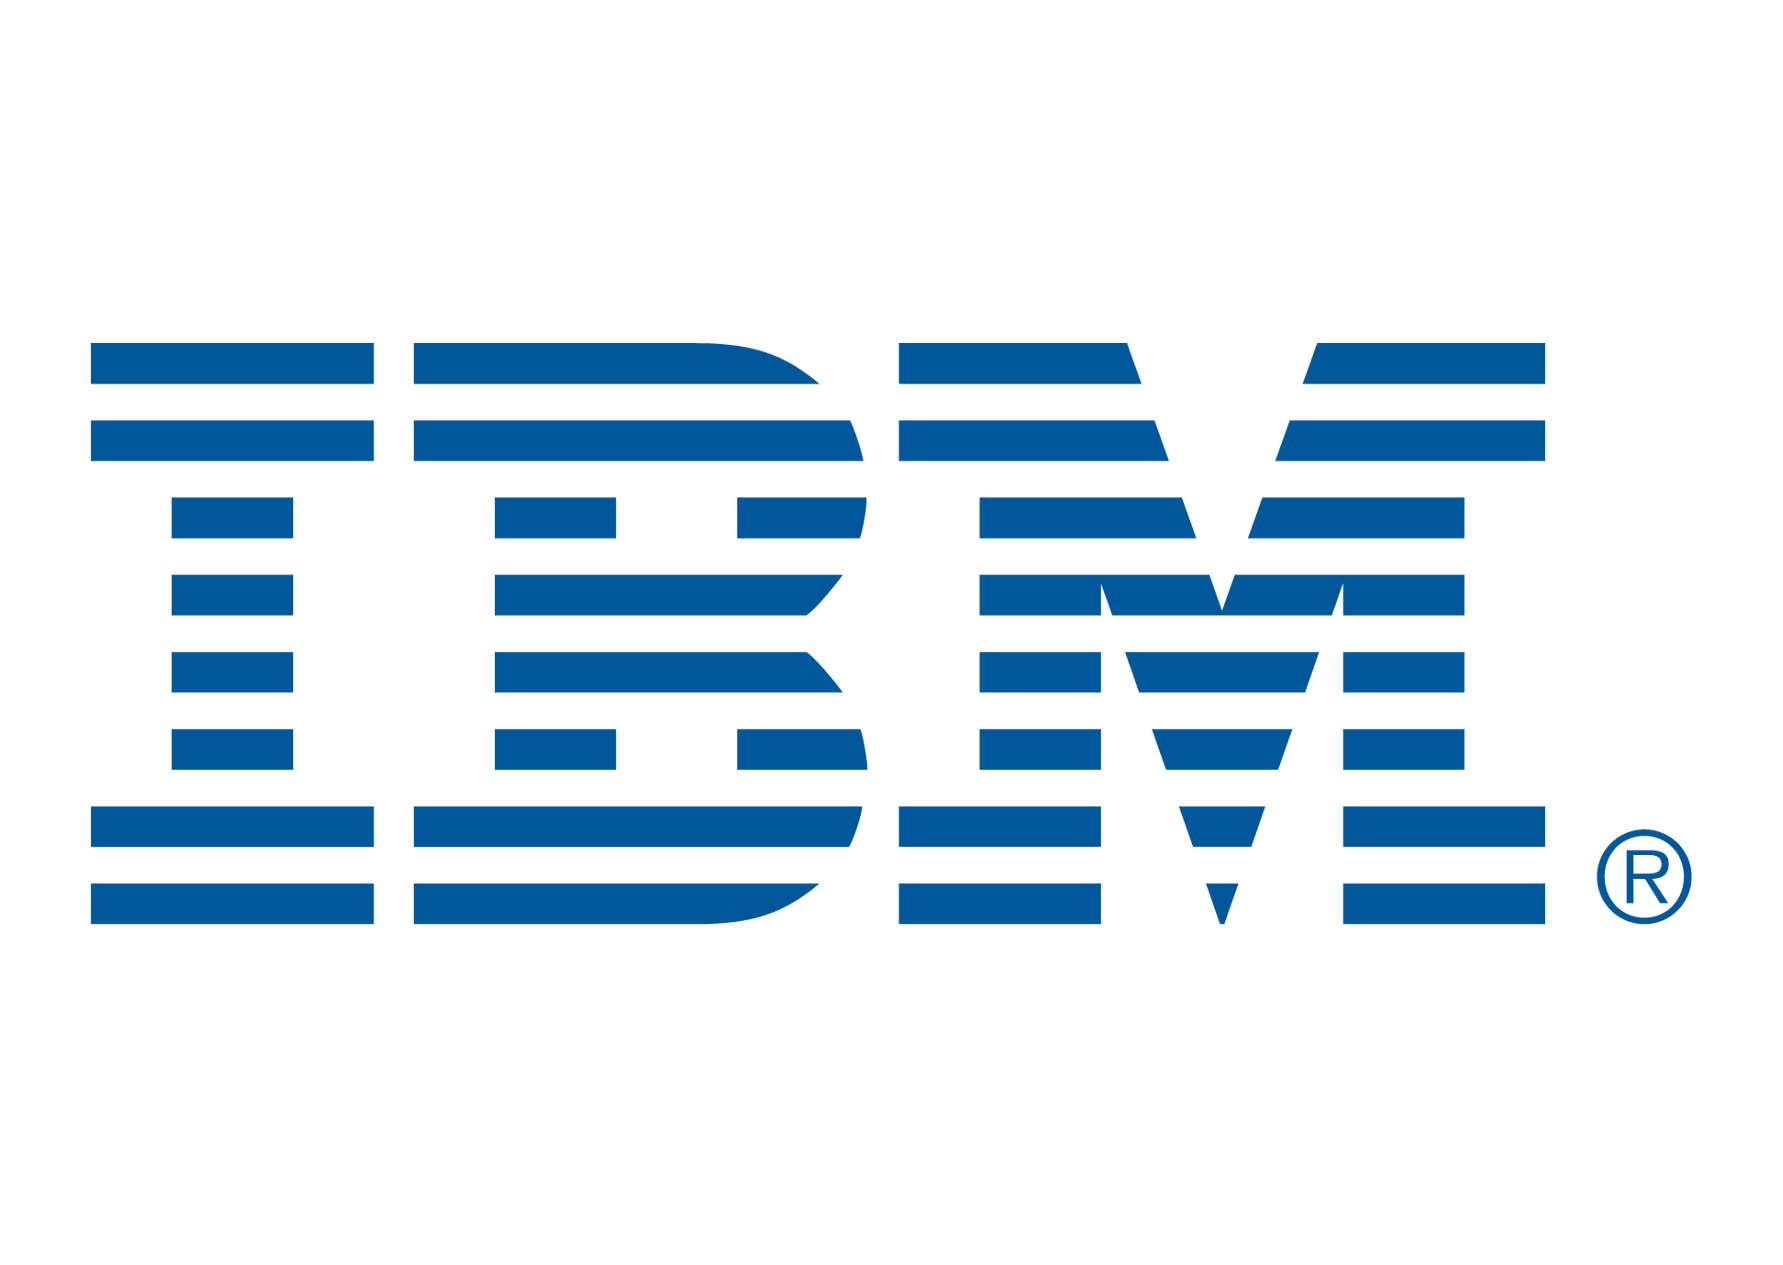 IBM Wave Analysis – 30 January, 2020